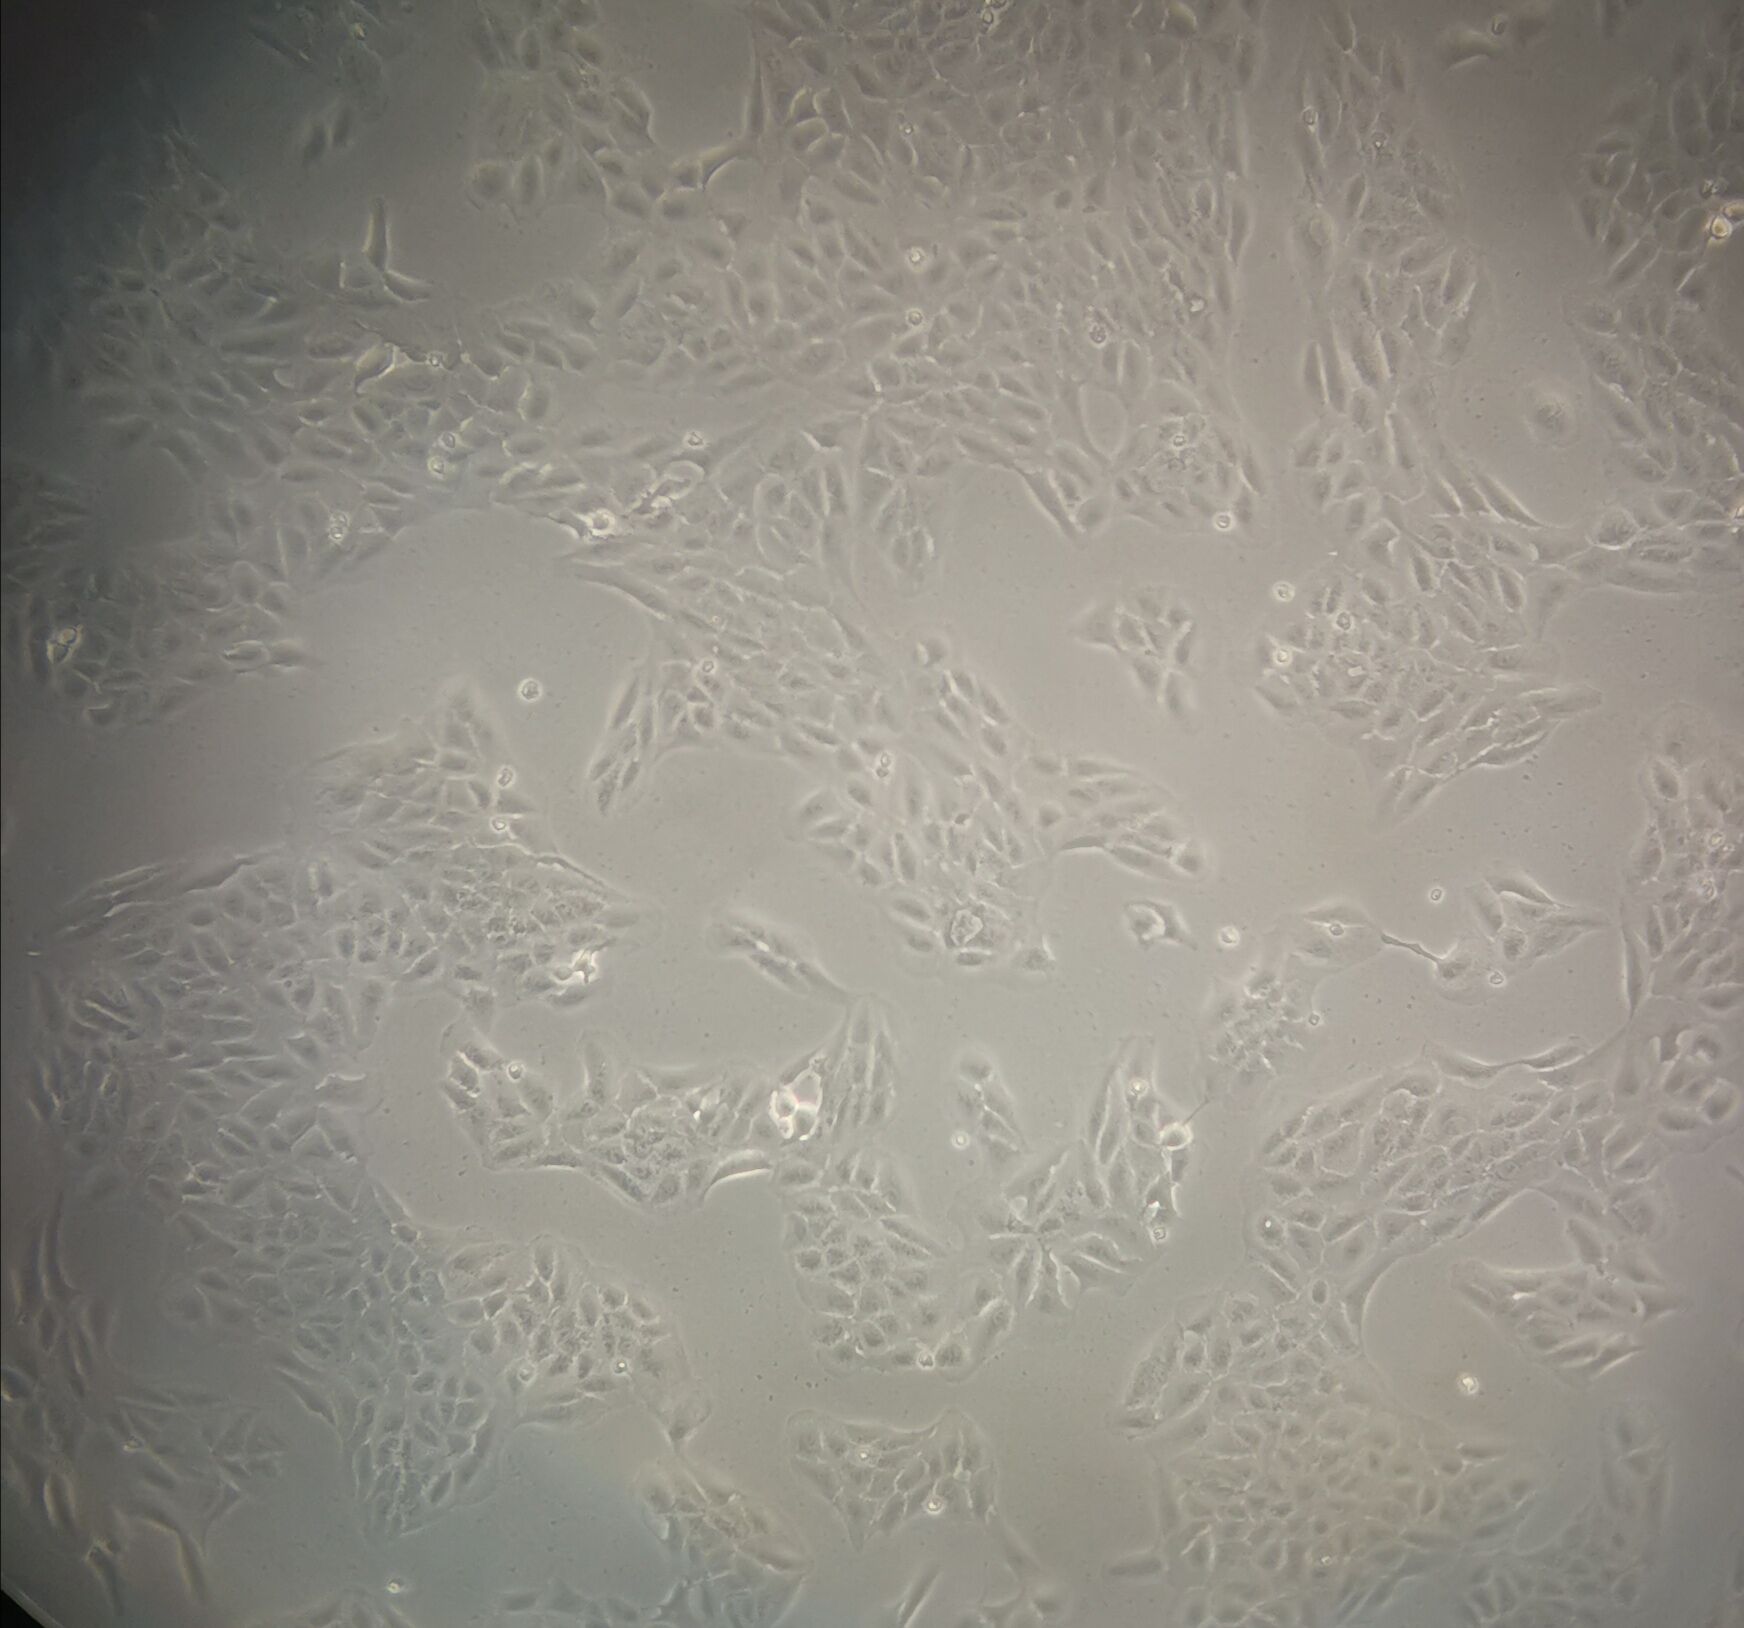 108CC15 Cell|小鼠神经母瘤与大鼠胶质瘤之融合细胞